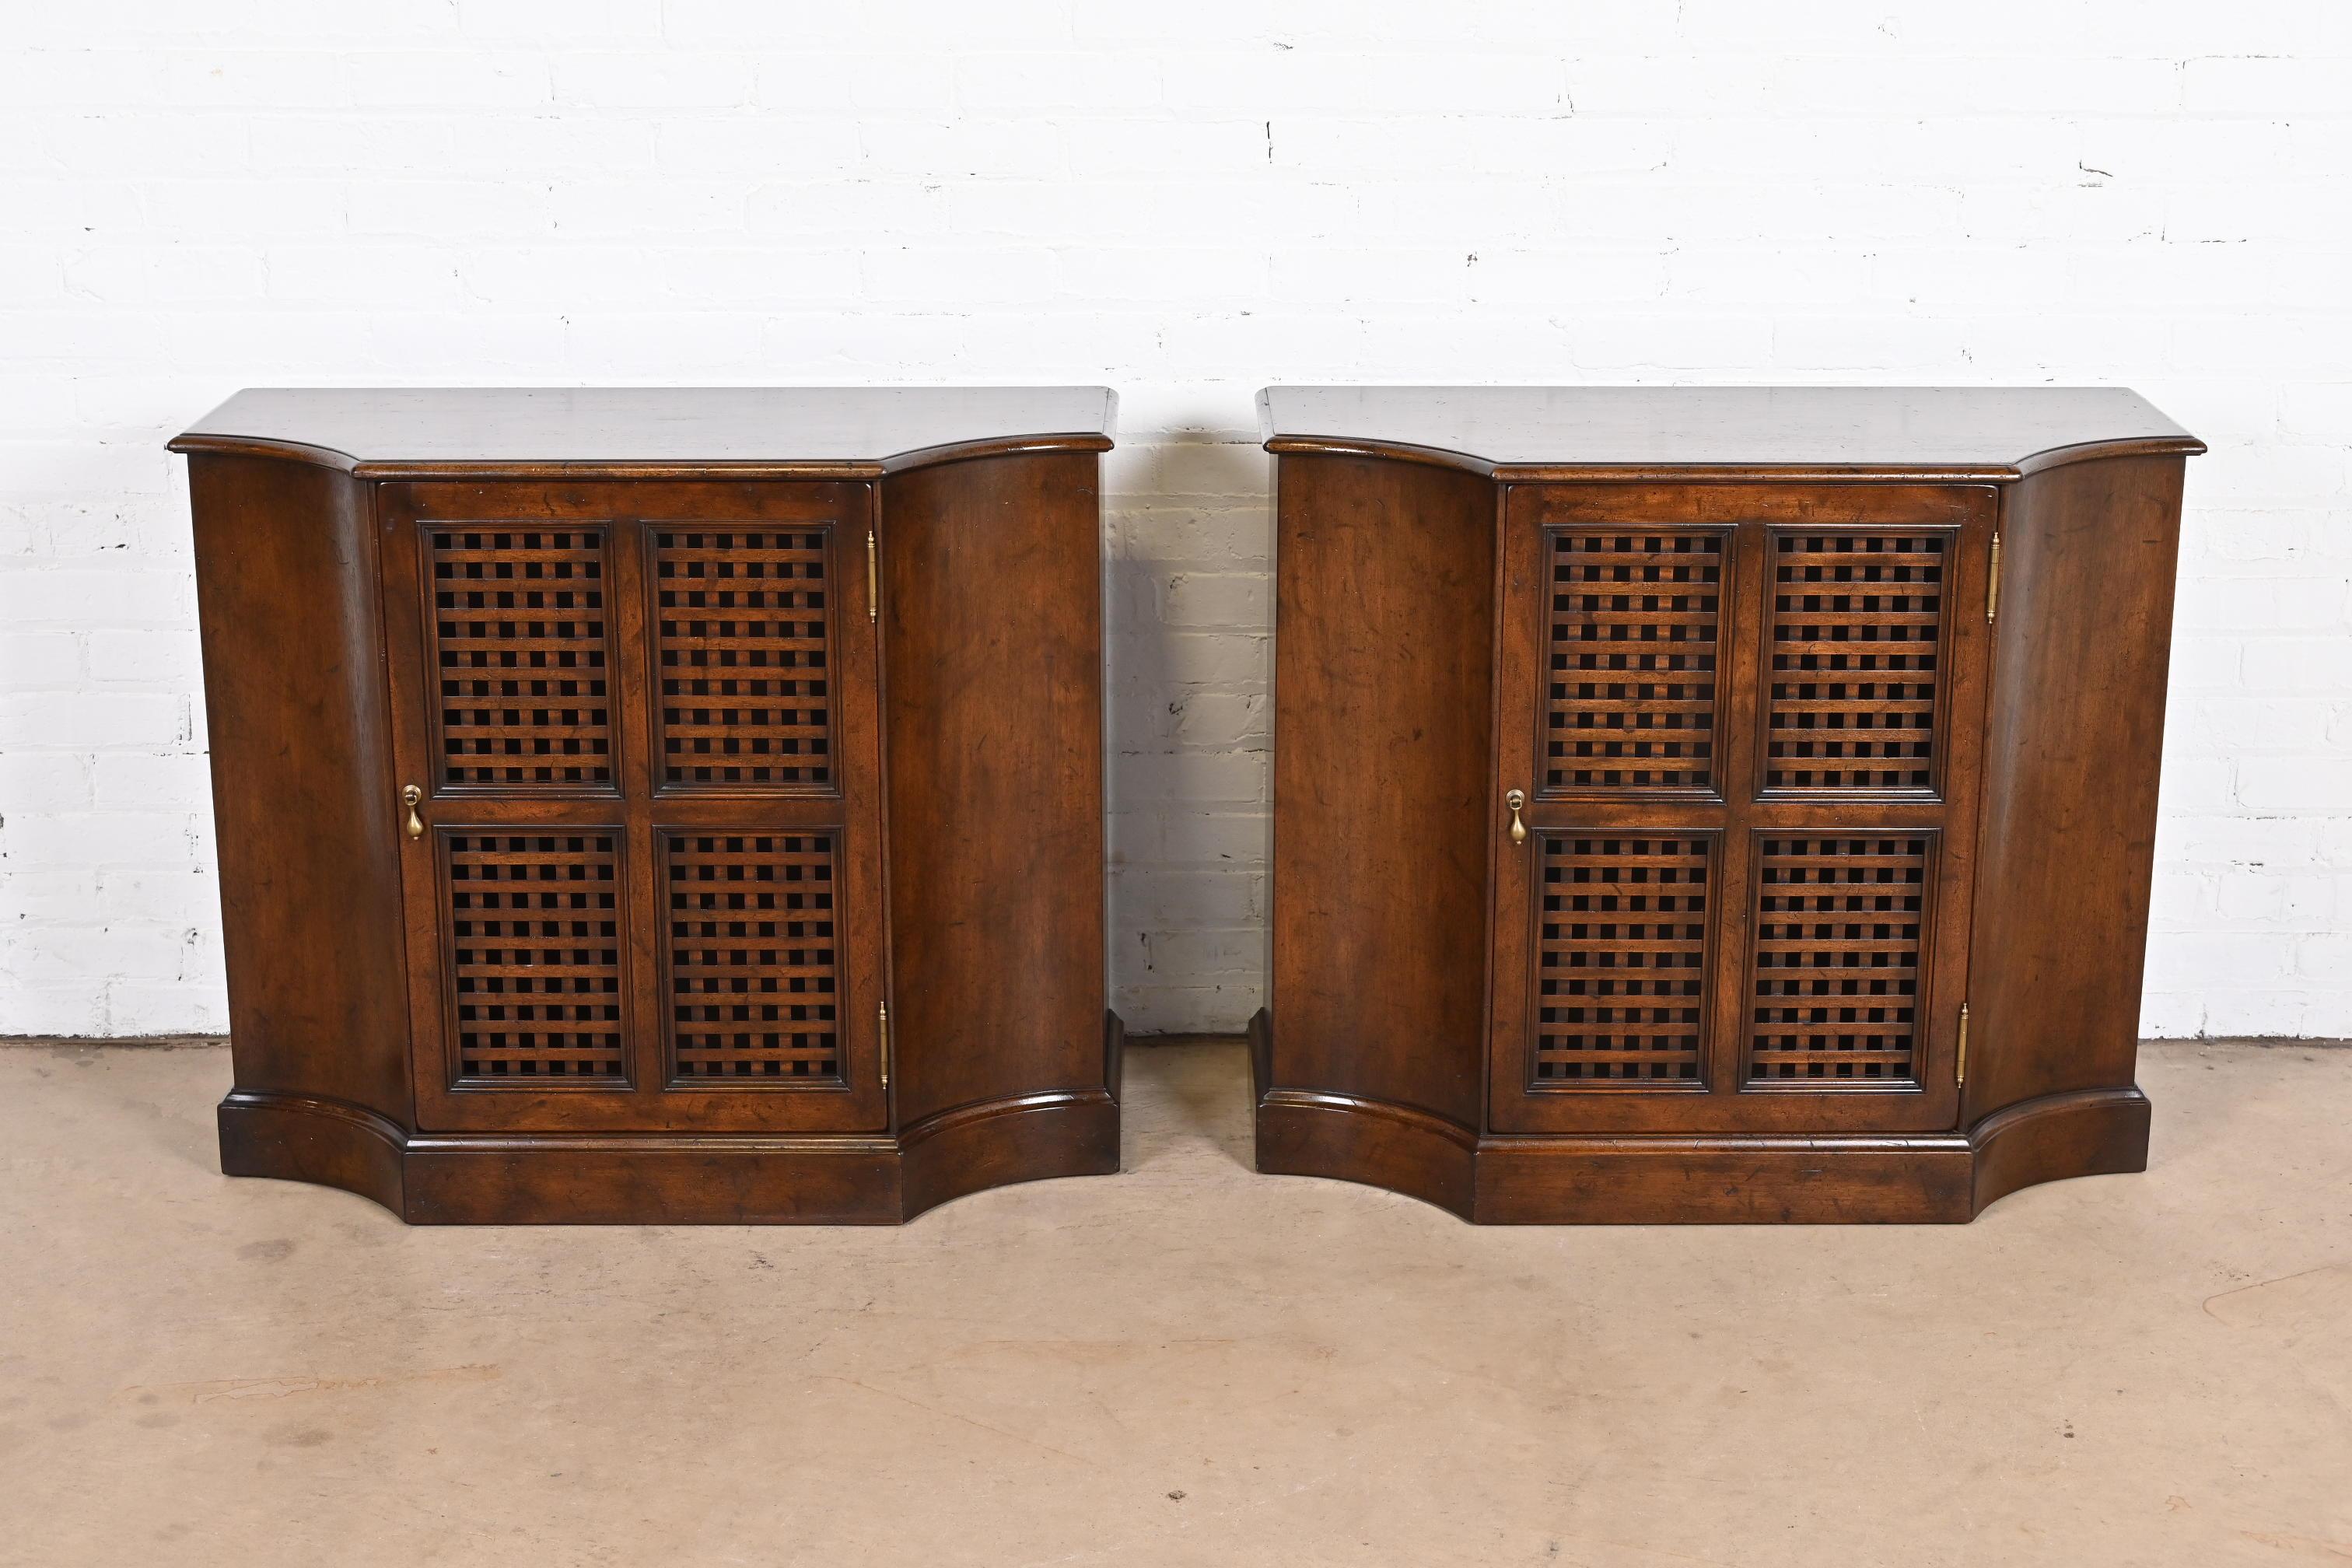 Une magnifique paire de commodes, consoles ou tables de chevet de style Regency

Par Hille

USA, Milieu du 20ème siècle

En noyer sculpté, avec des portes en treillis et des ferrures en laiton d'origine.

Dimensions : 36 